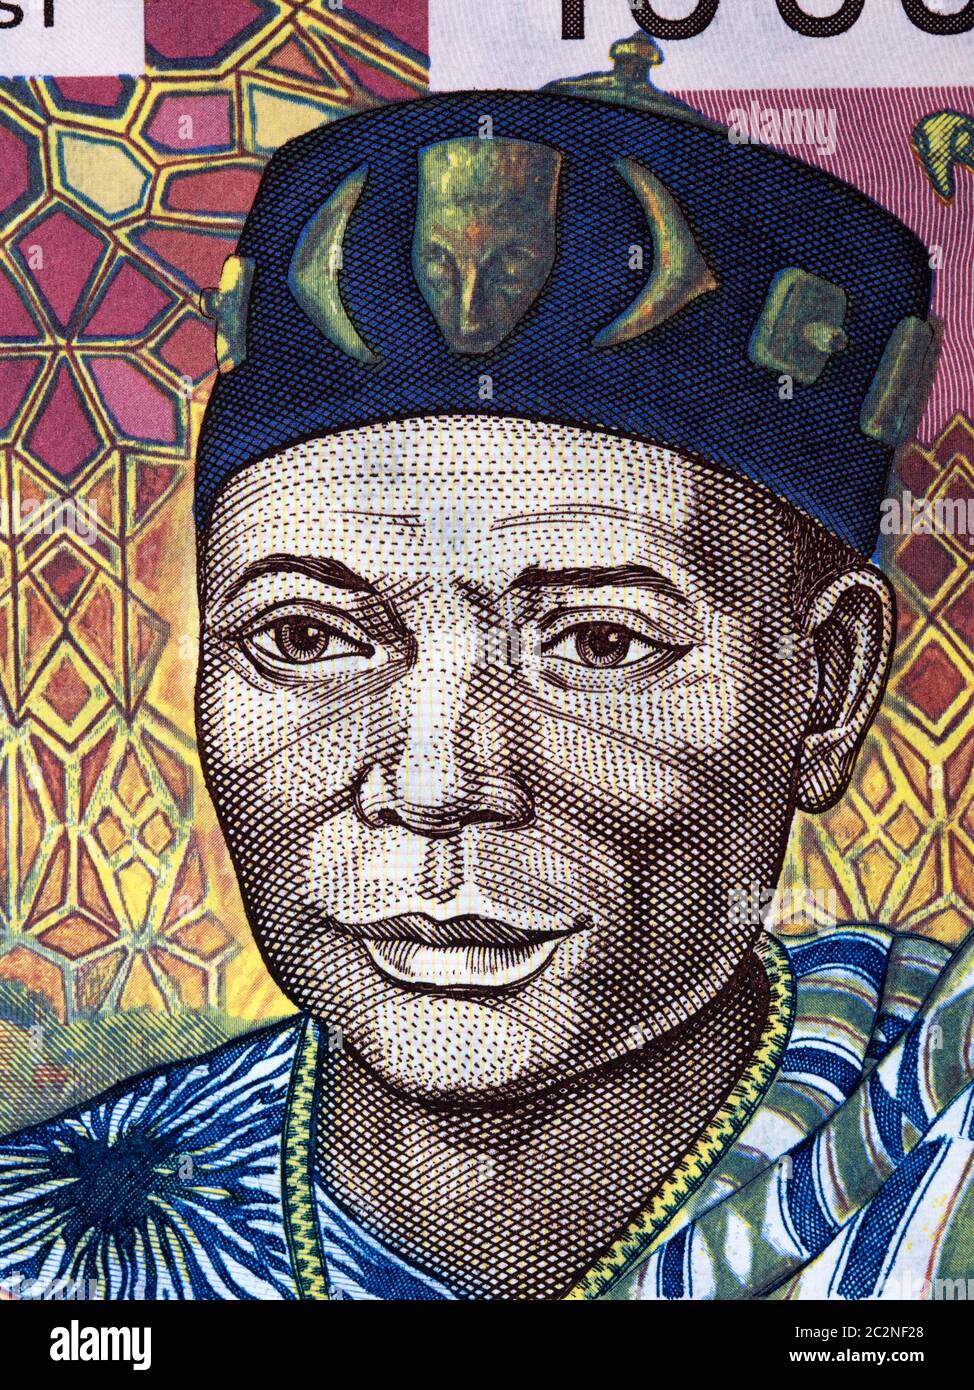 Häuptling ein Porträt von alten Westafrikanischen Staaten Geld Stockfoto